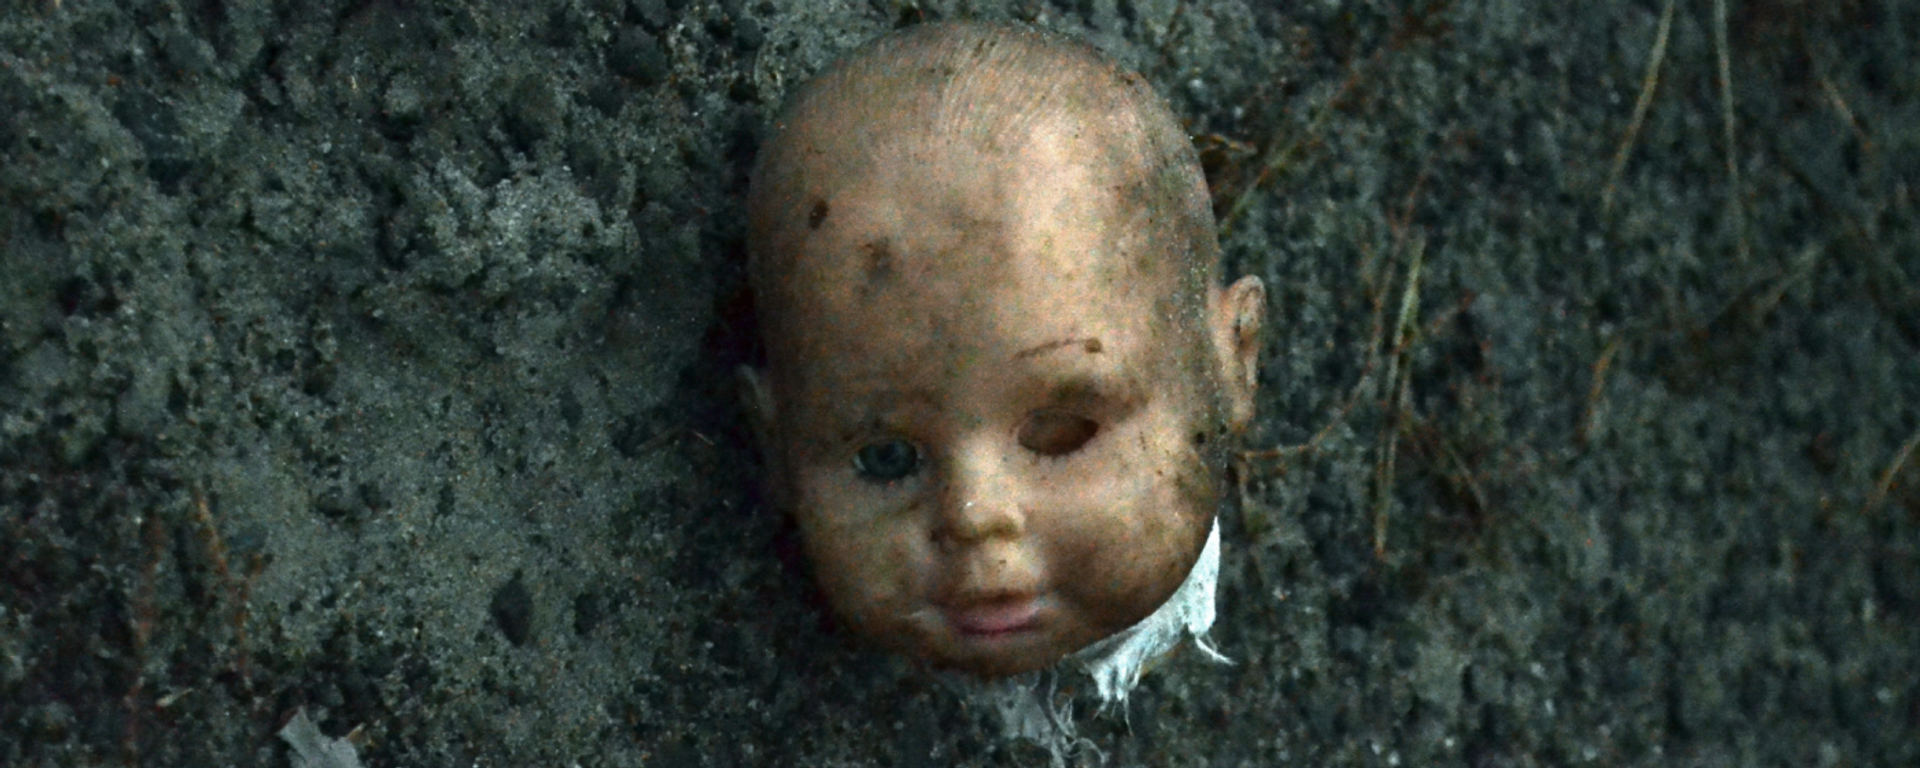 La cabeza de una muñeca, imagen ilustrativa - Sputnik Mundo, 1920, 18.09.2021